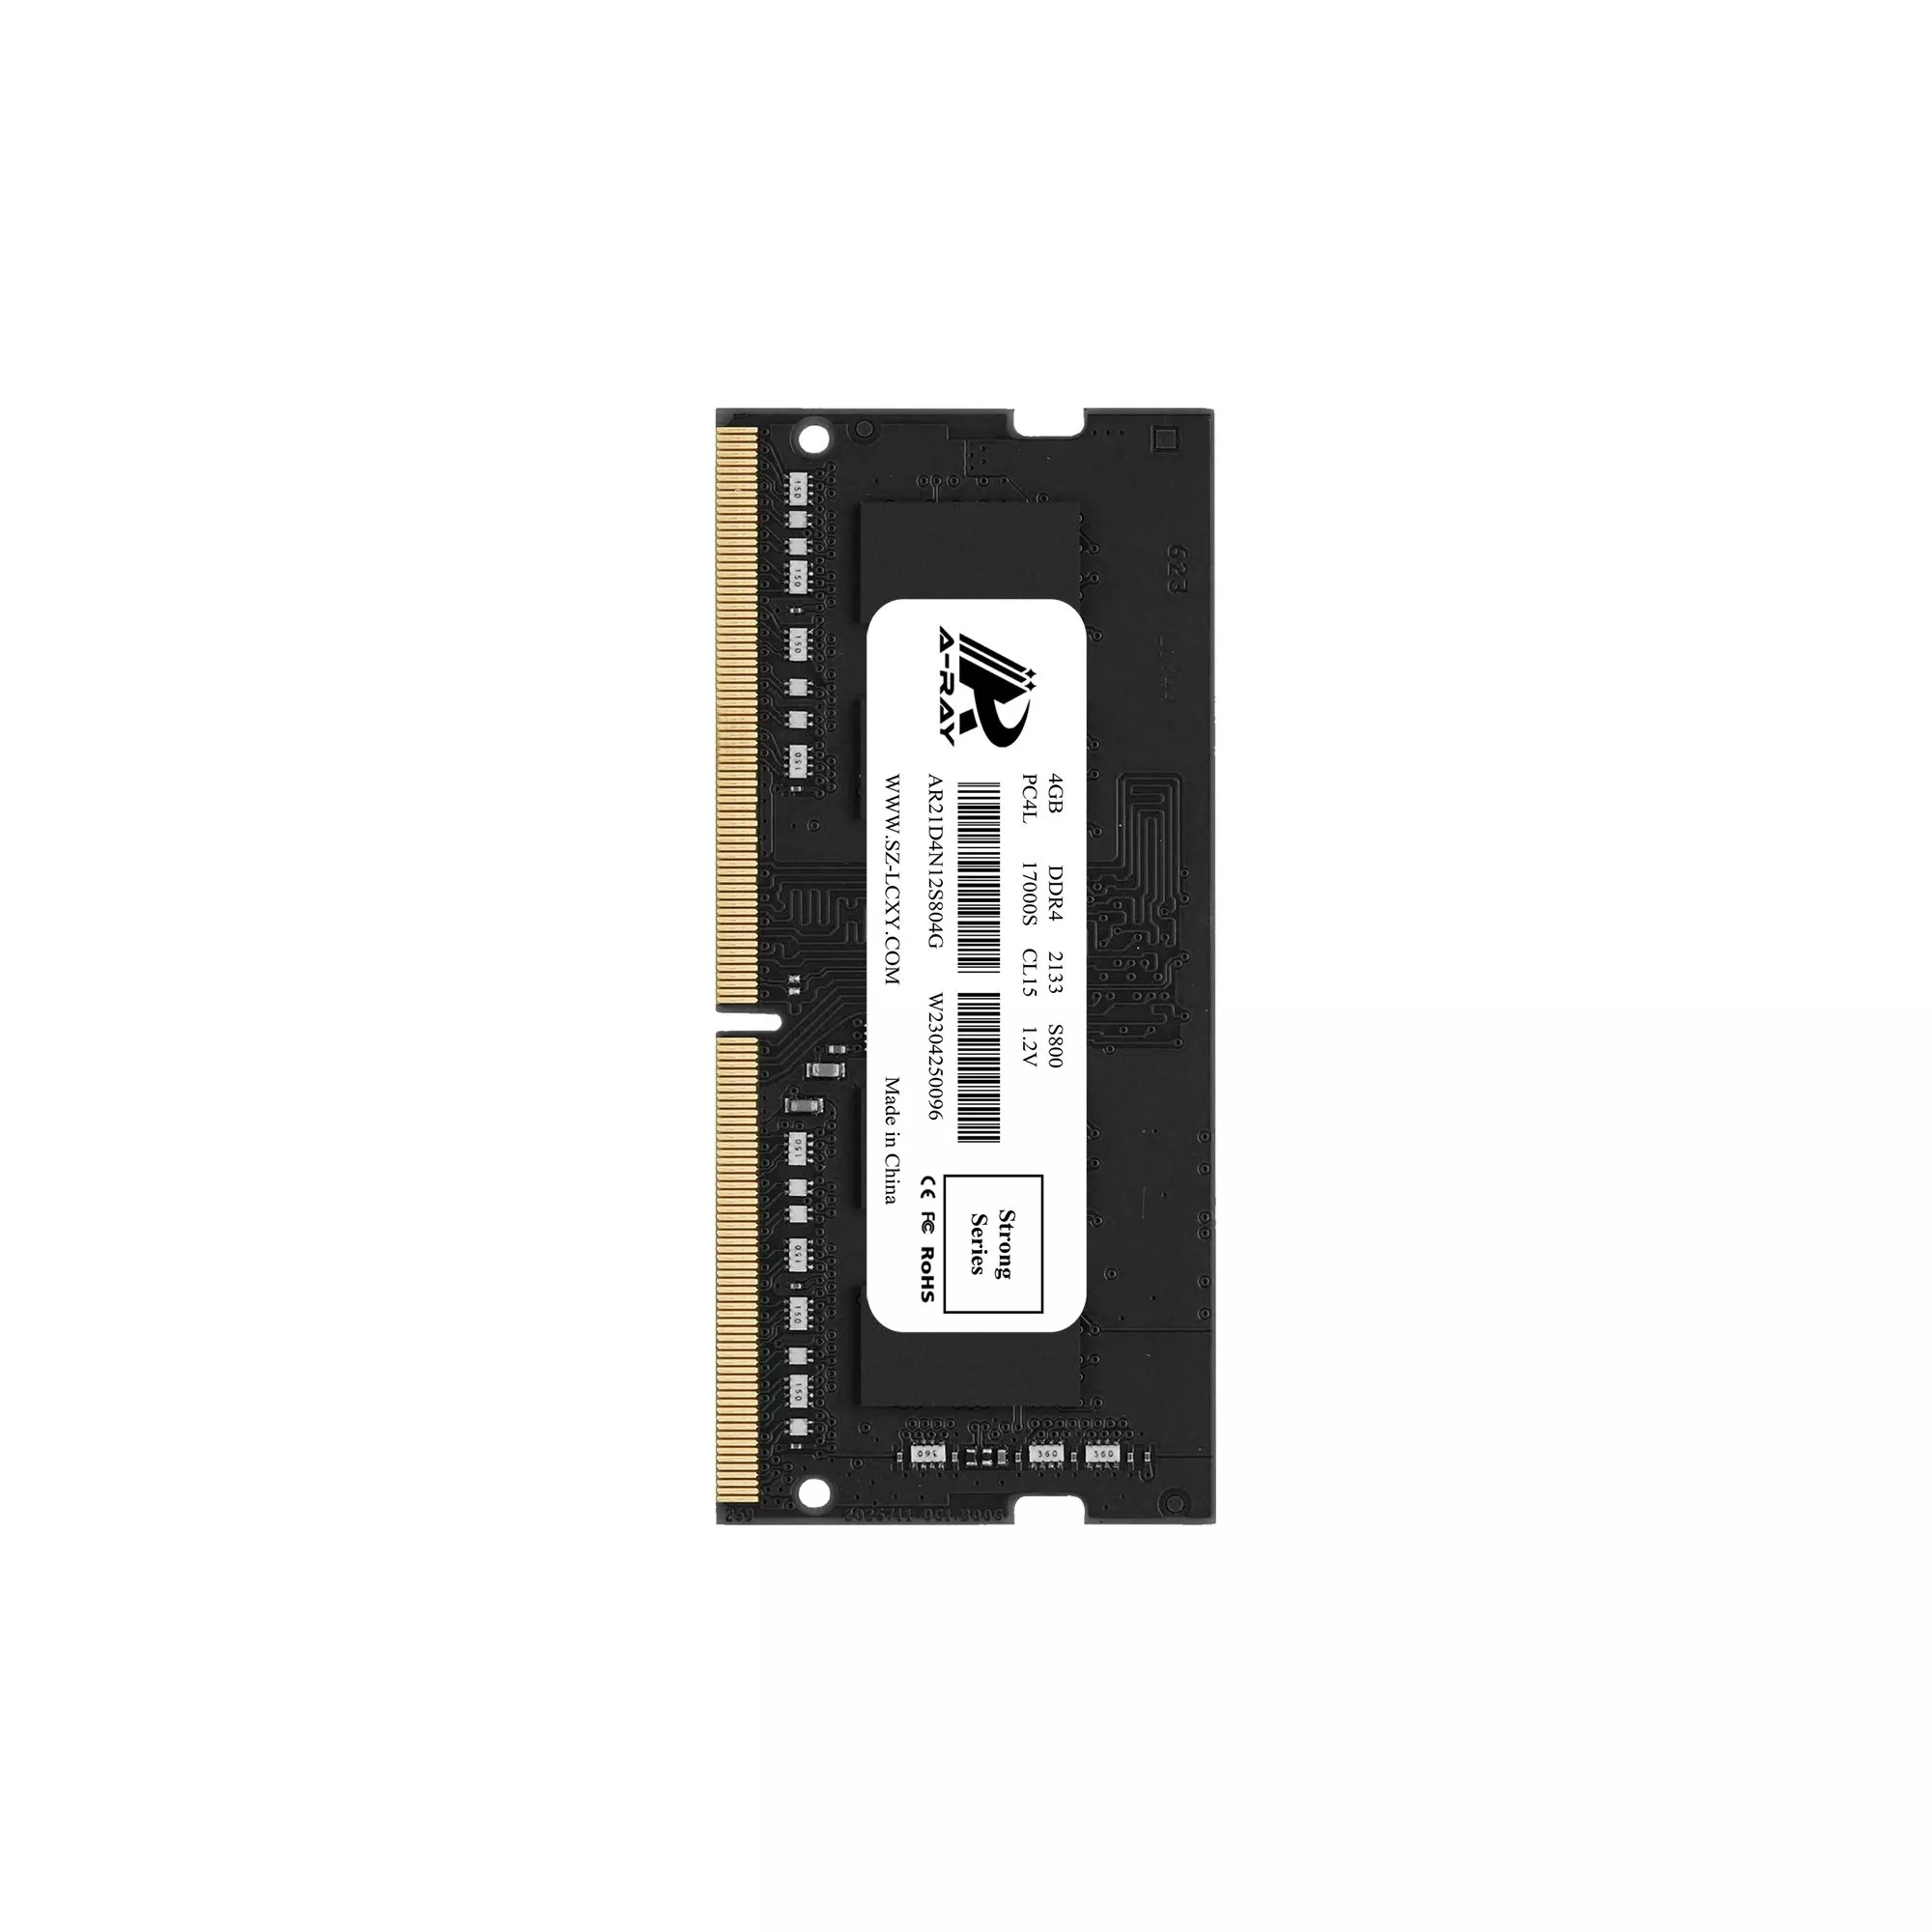 Bộ nhớ trong Ram A-Ray 4GB DDR4 Bus 2133 Mhz Laptop S800 17000 MB/s P/N: AR21D4N12S804G